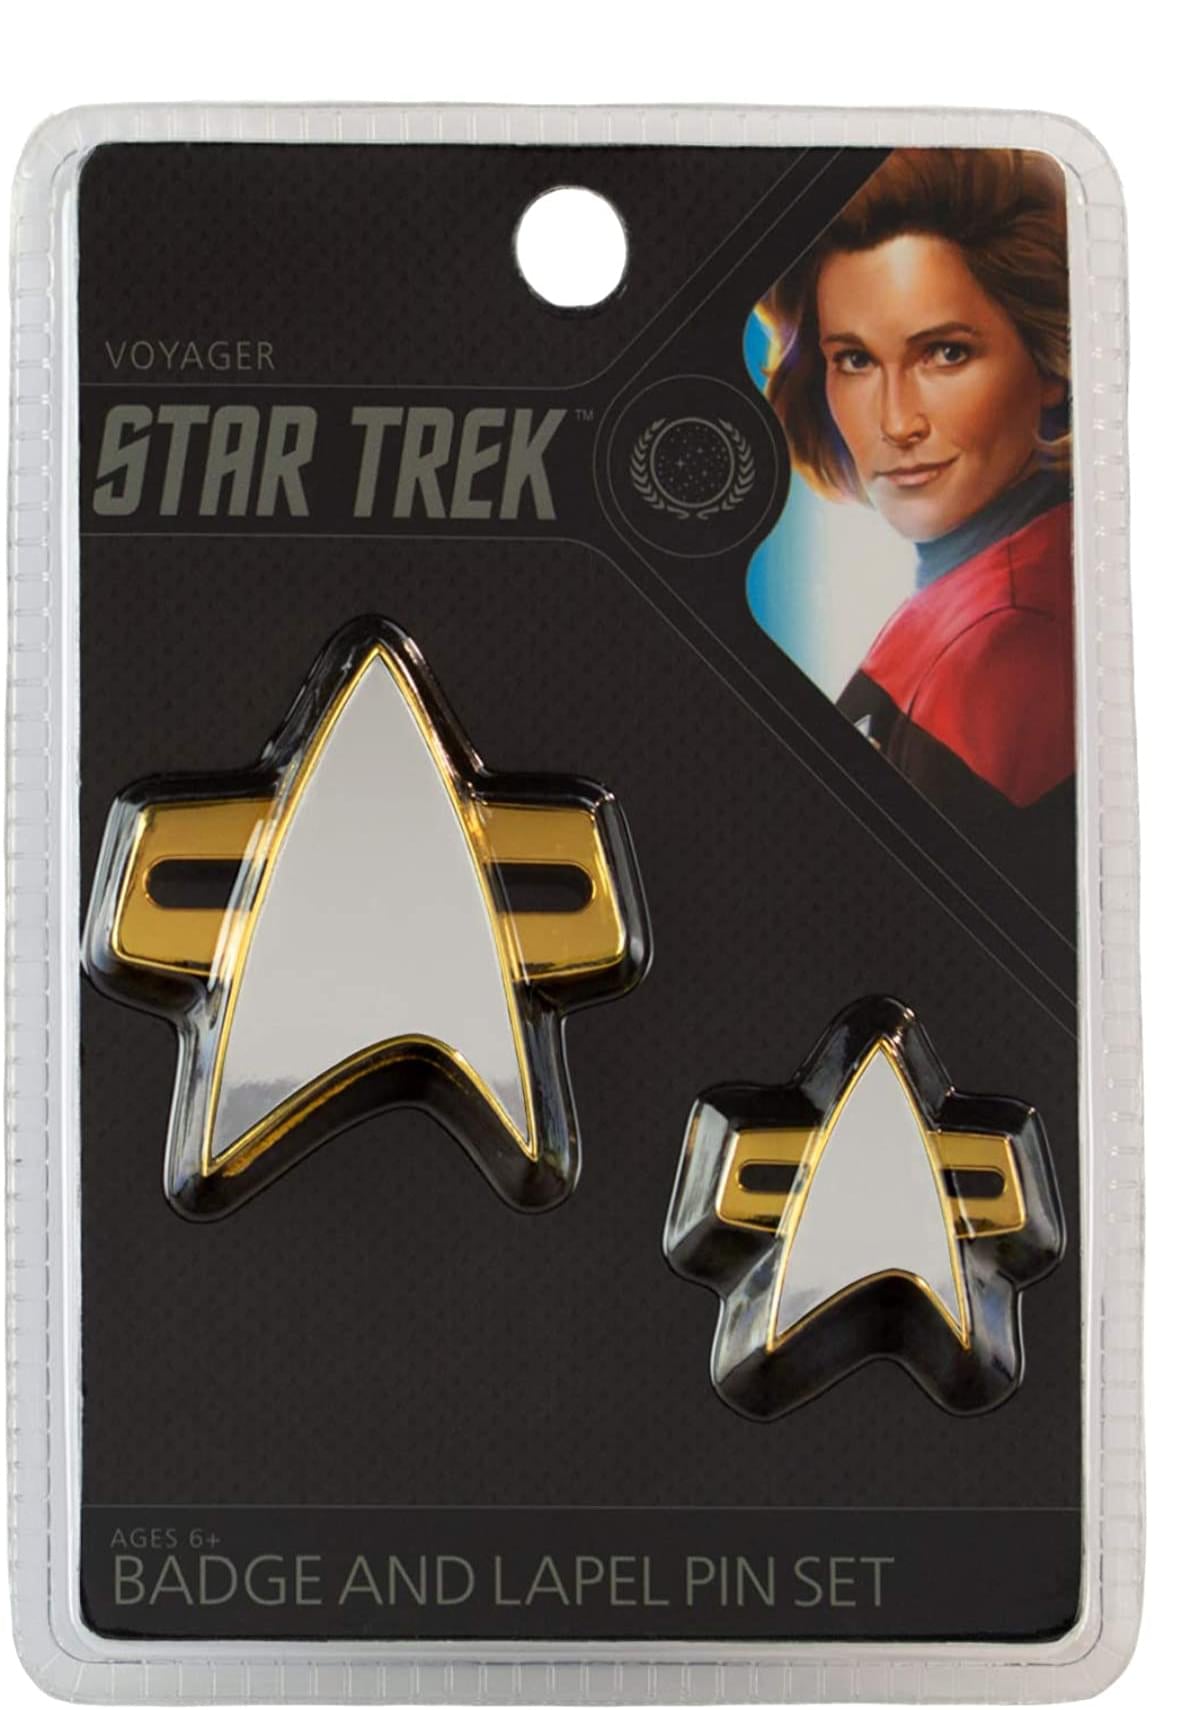 Star Trek Voyager Communicator Badge and Lapel Pin Set